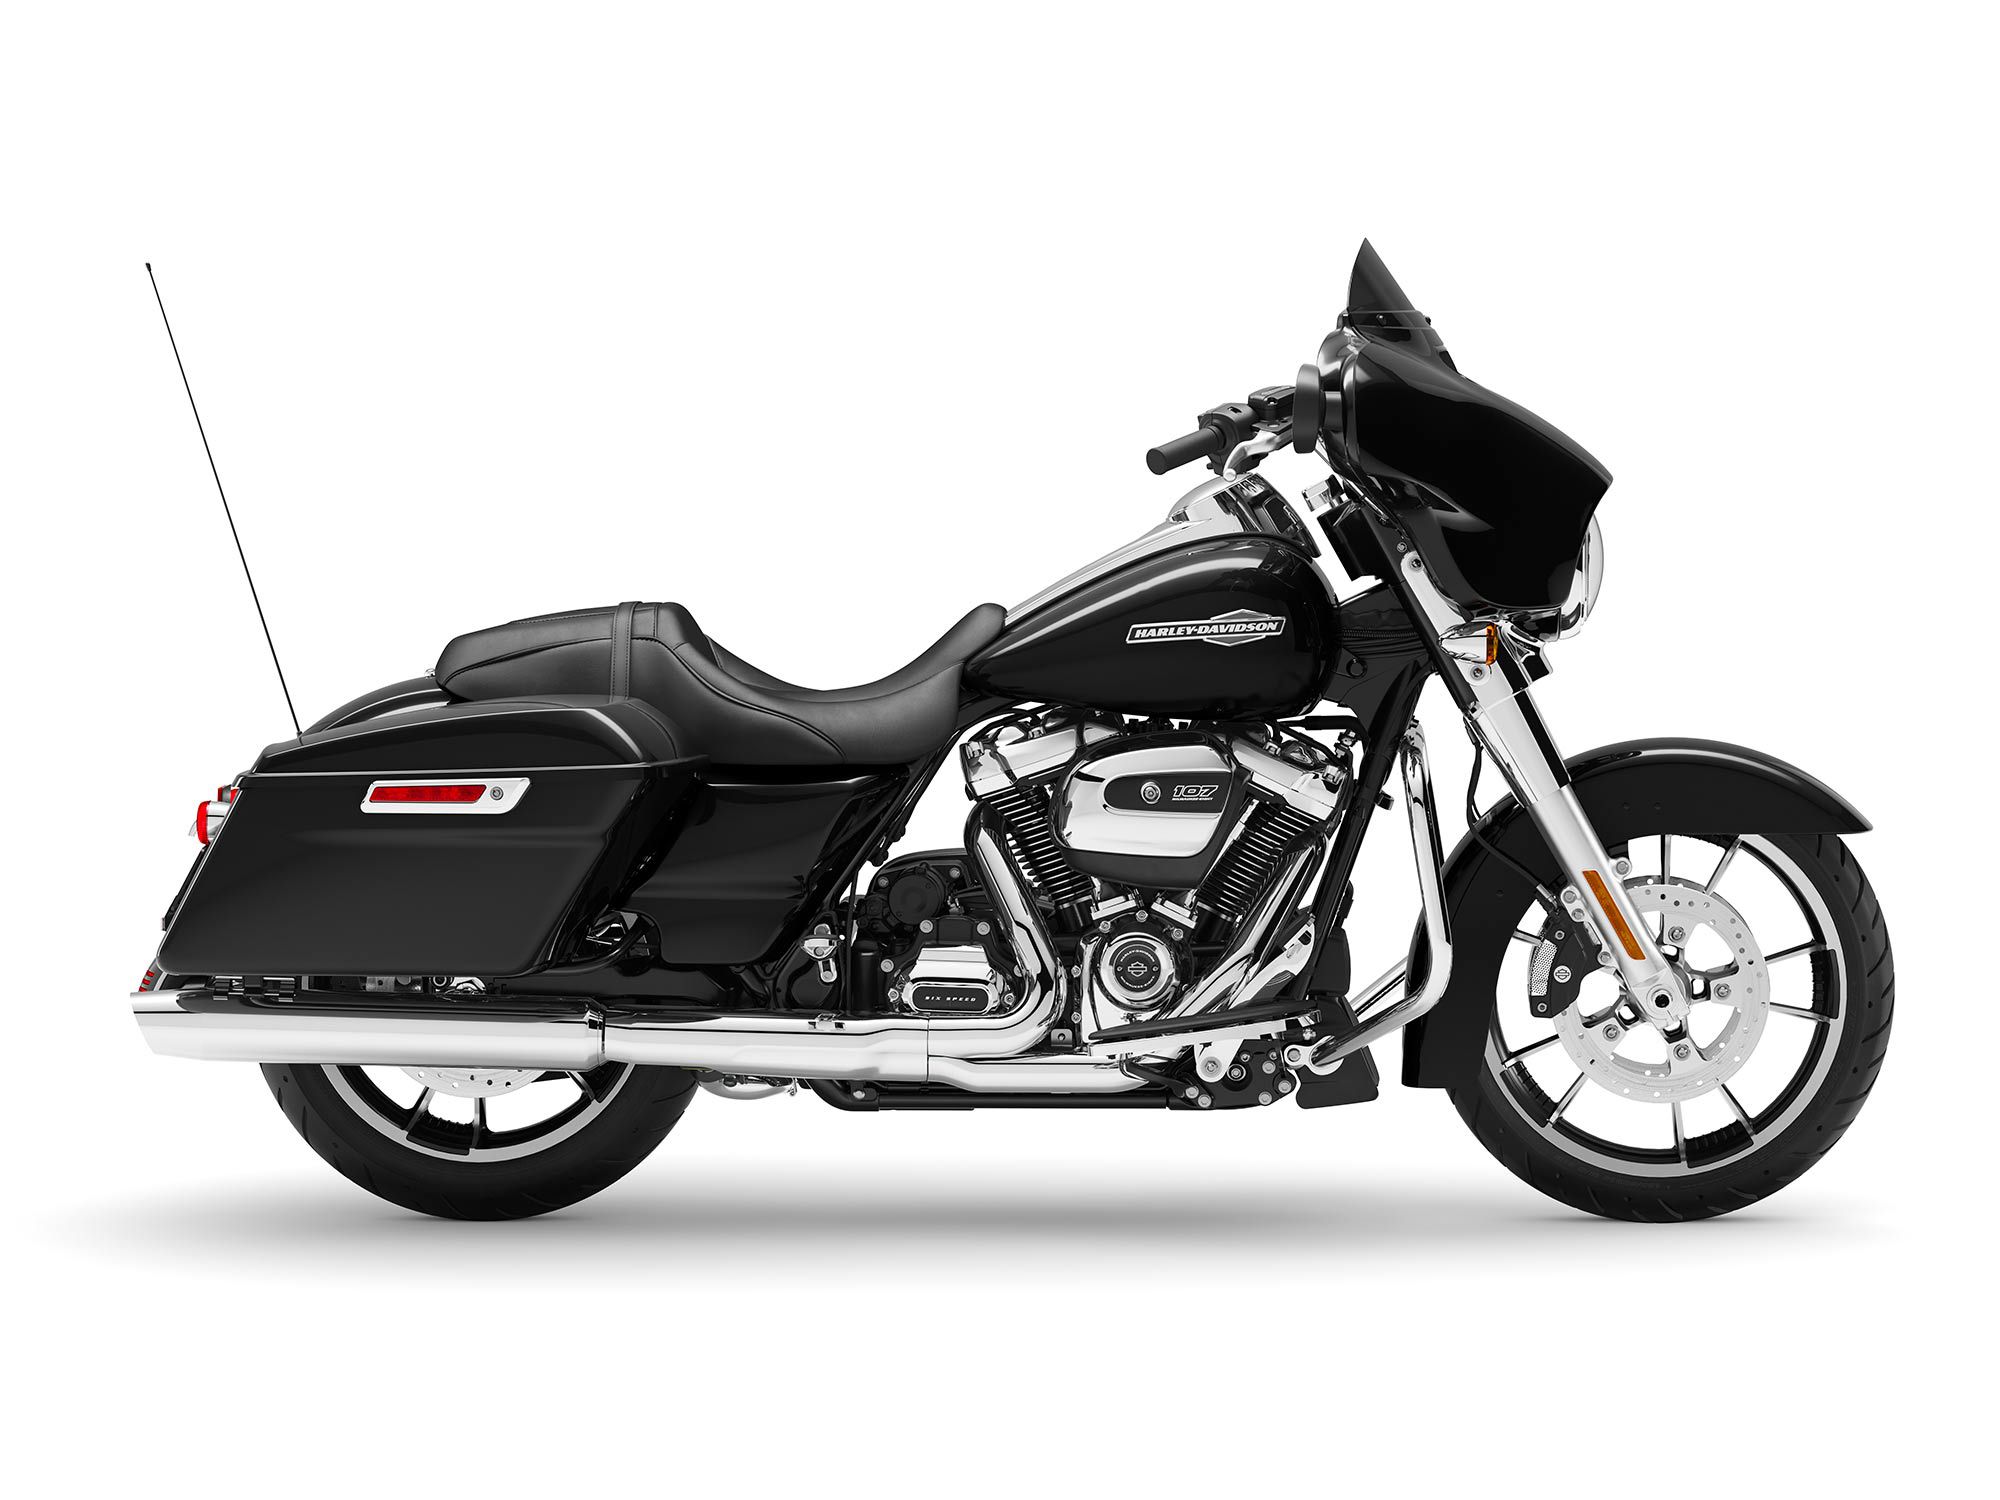 2022 Harley-Davidson Street Glide in Vivid Black.